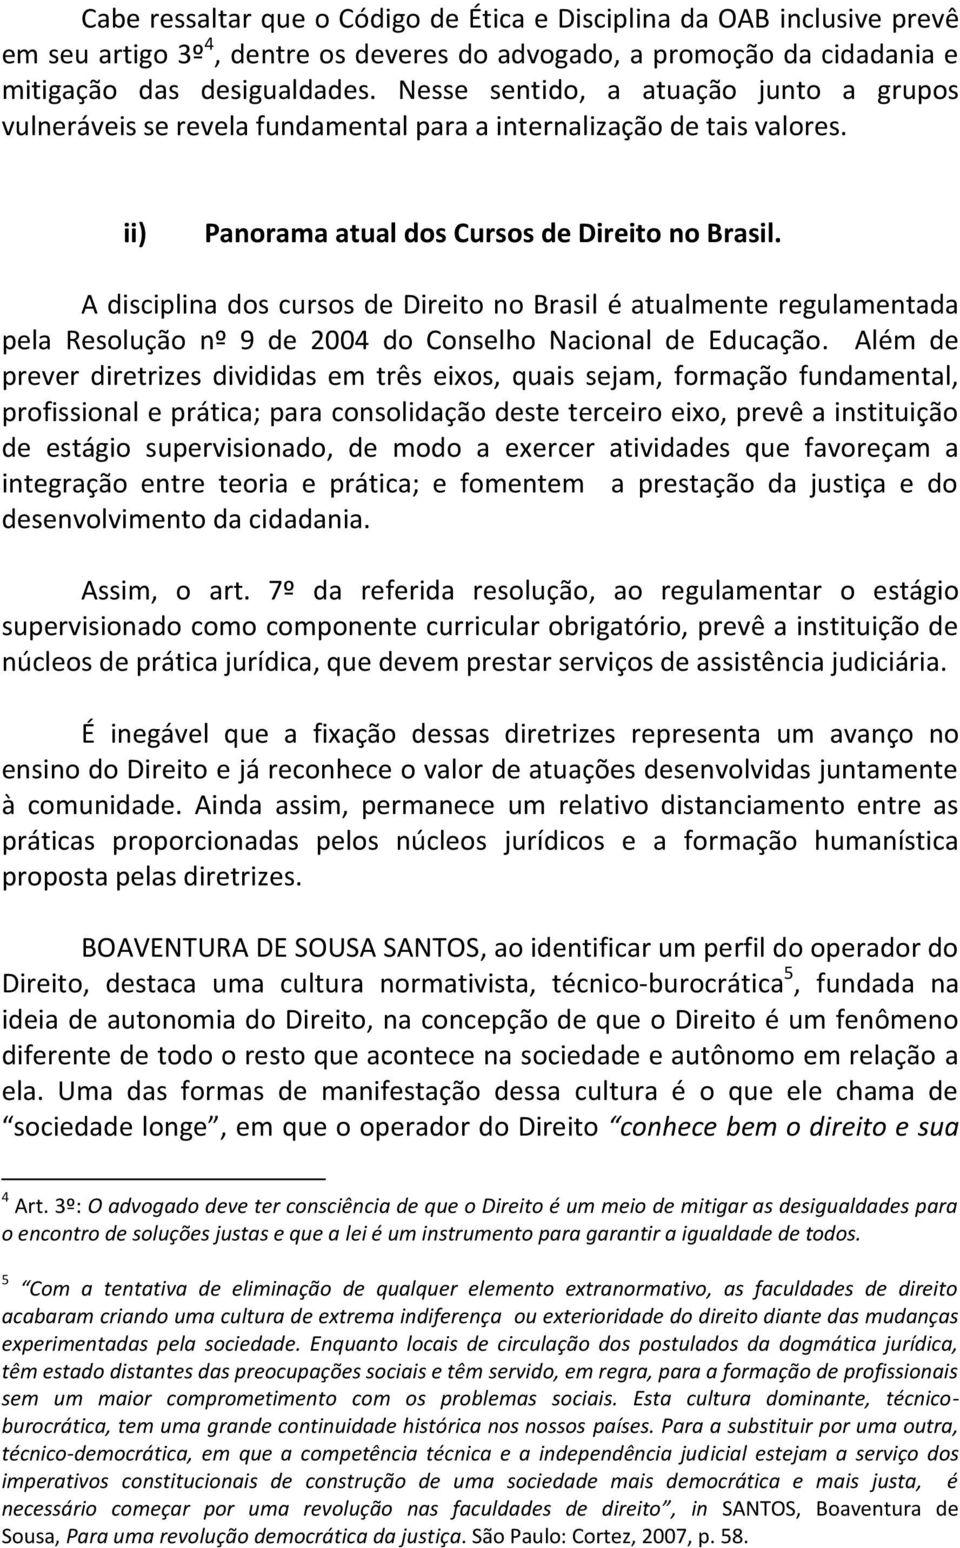 A disciplina dos cursos de Direito no Brasil é atualmente regulamentada pela Resolução nº 9 de 2004 do Conselho Nacional de Educação.